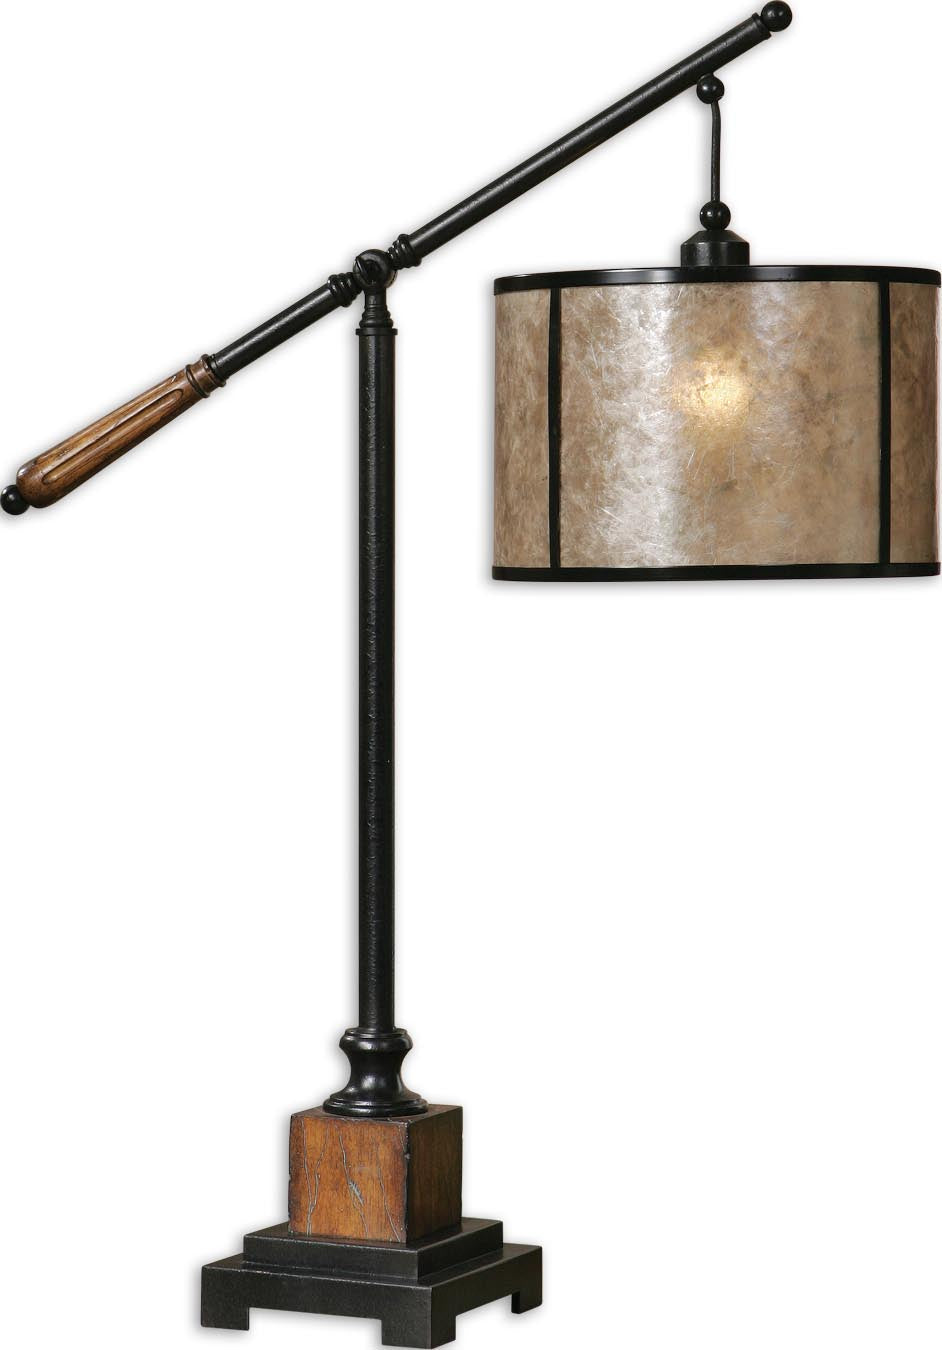 Sitka Lantern Table Lamp